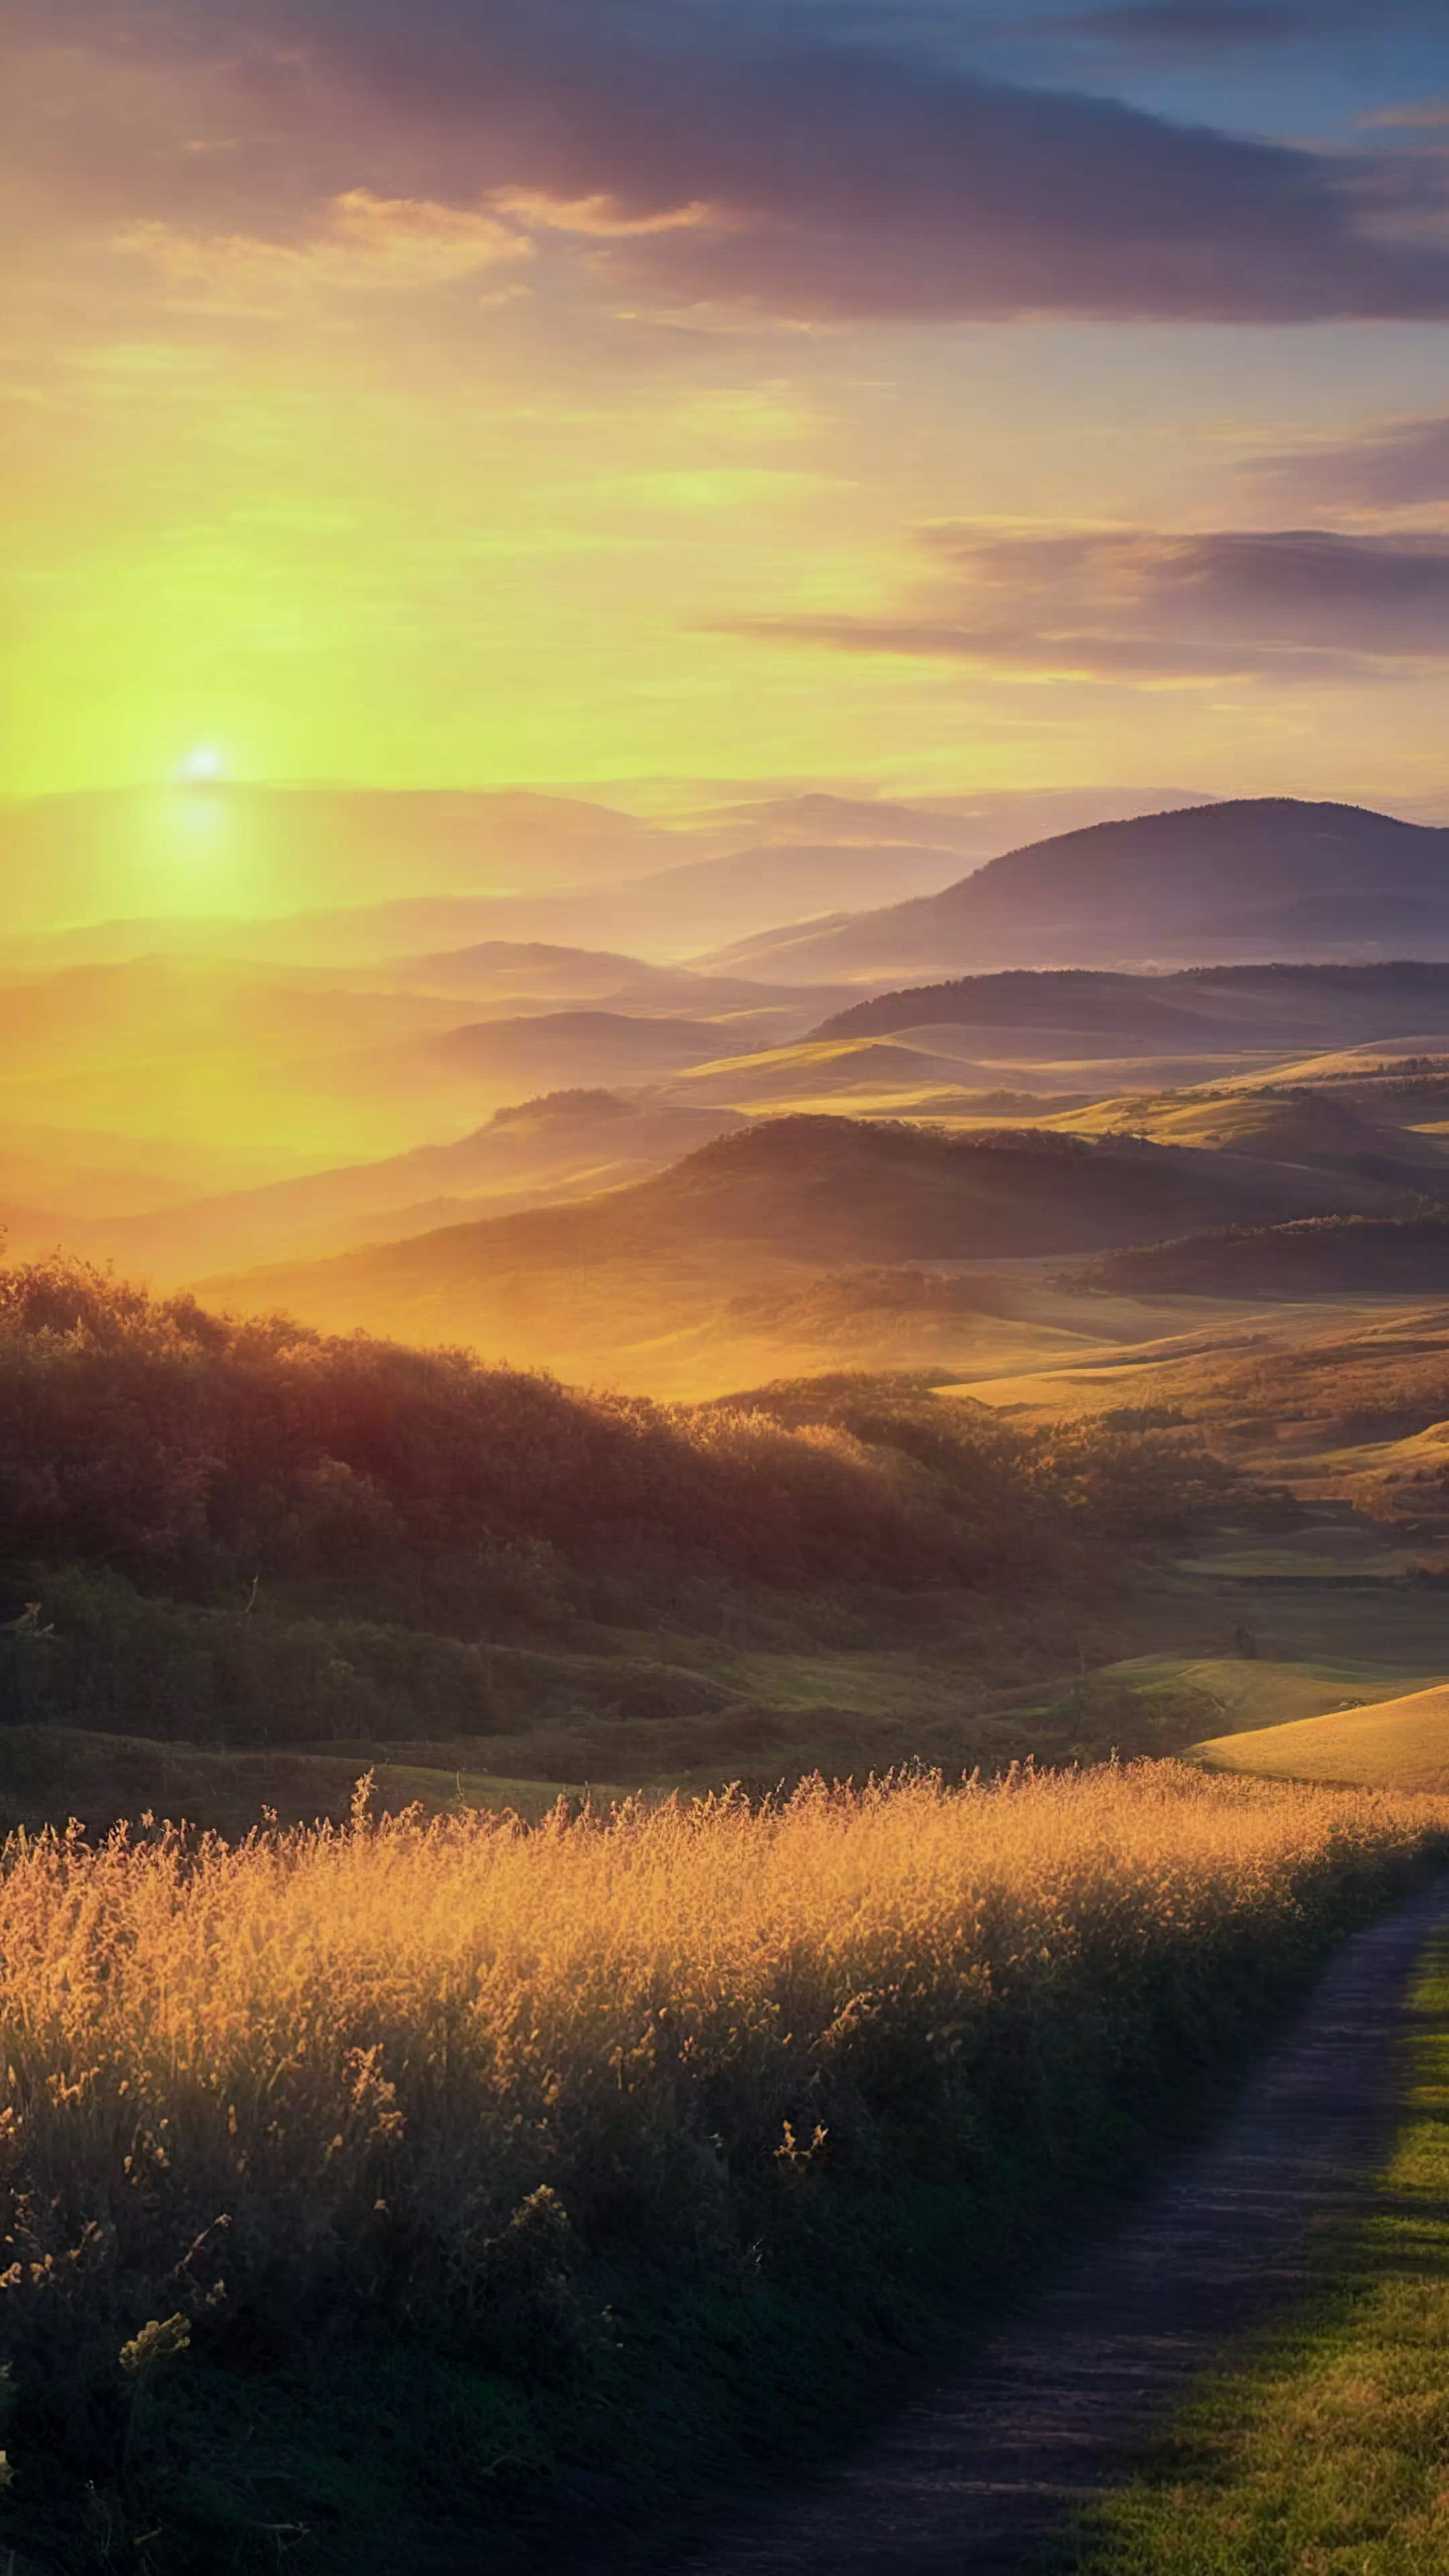 Transformez l'écran de votre appareil avec notre fond d'écran en HD des paysages pour mobile, capturant un lever de soleil sur une campagne avec des collines ondulantes baignées d'une lueur dorée, et laissez votre appareil devenir un portail vers un matin serein à la campagne.